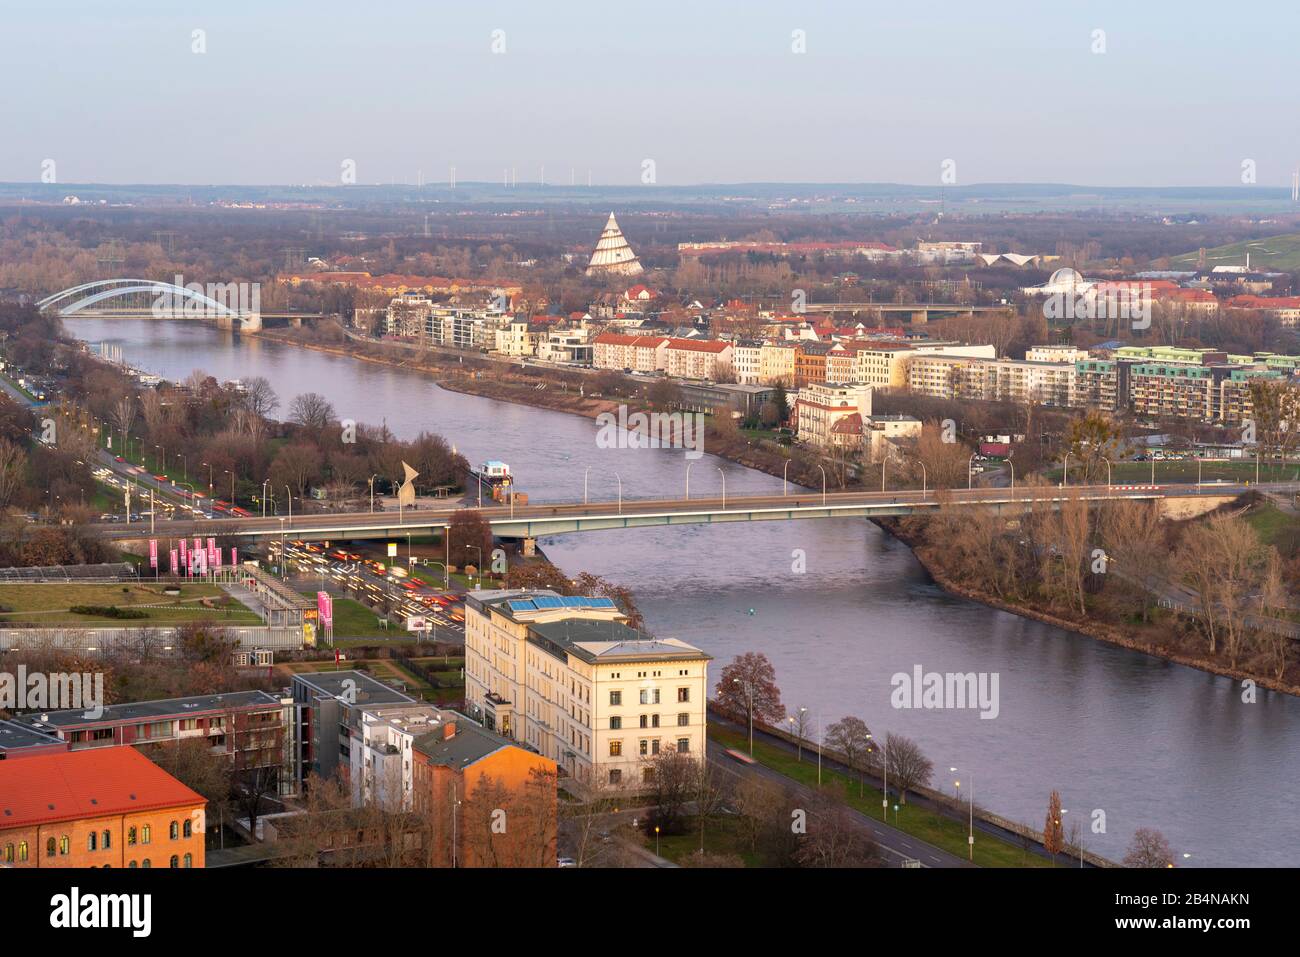 Germania, Sassonia-Anhalt, Magdeburgo, vista dalla torre nord della cattedrale al nuovo ponte fluviale e al parco Elbau con la torre del millennio alle sue spalle, Foto Stock